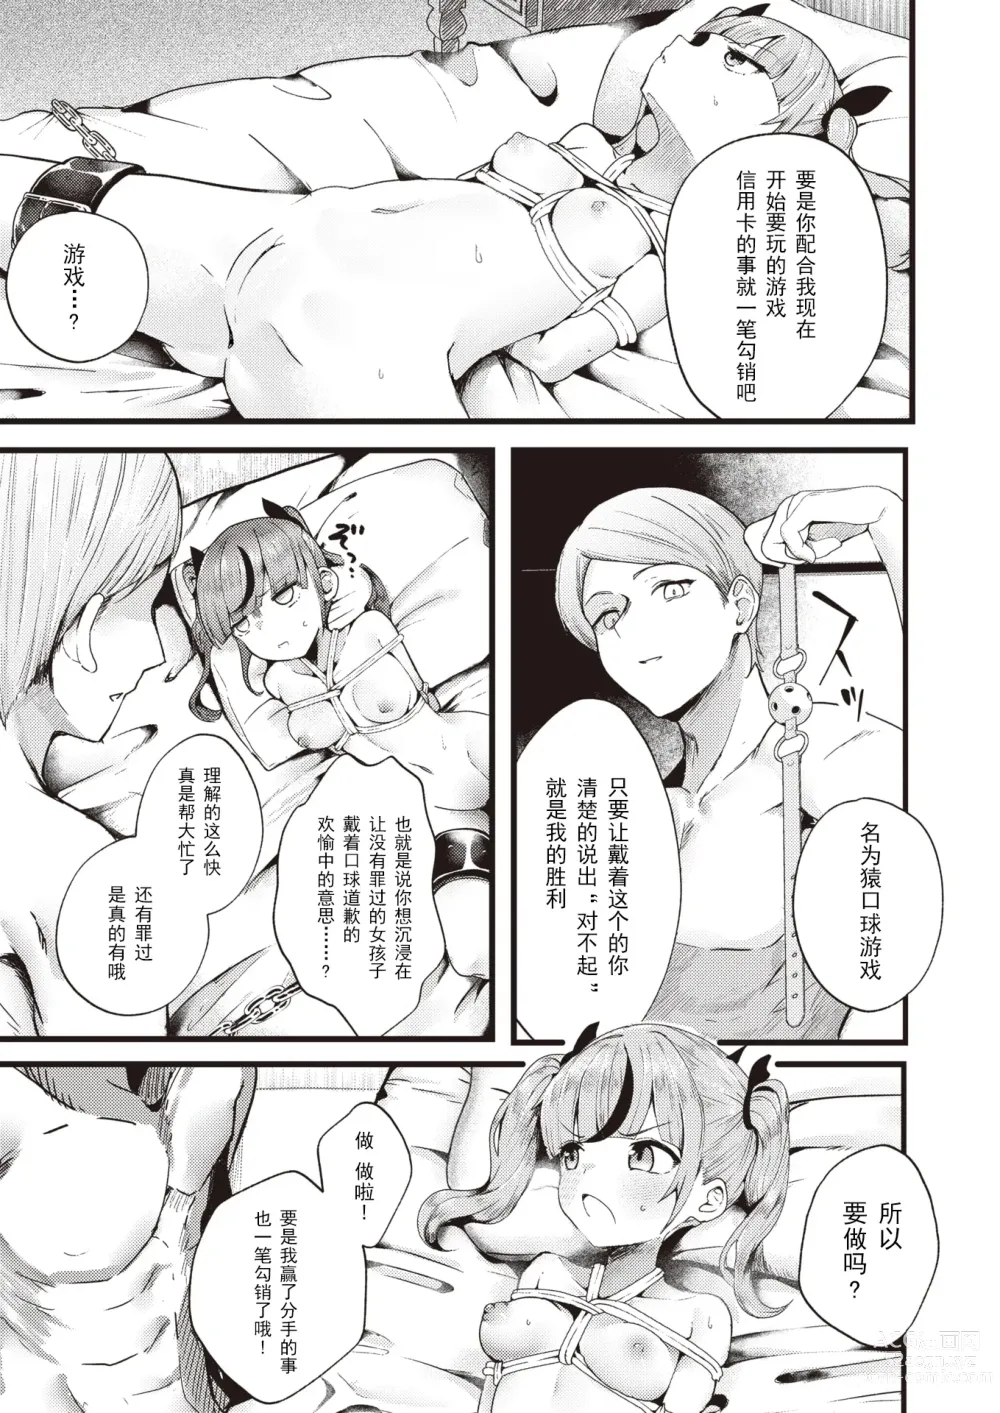 Page 9 of manga 支払いは身体で!